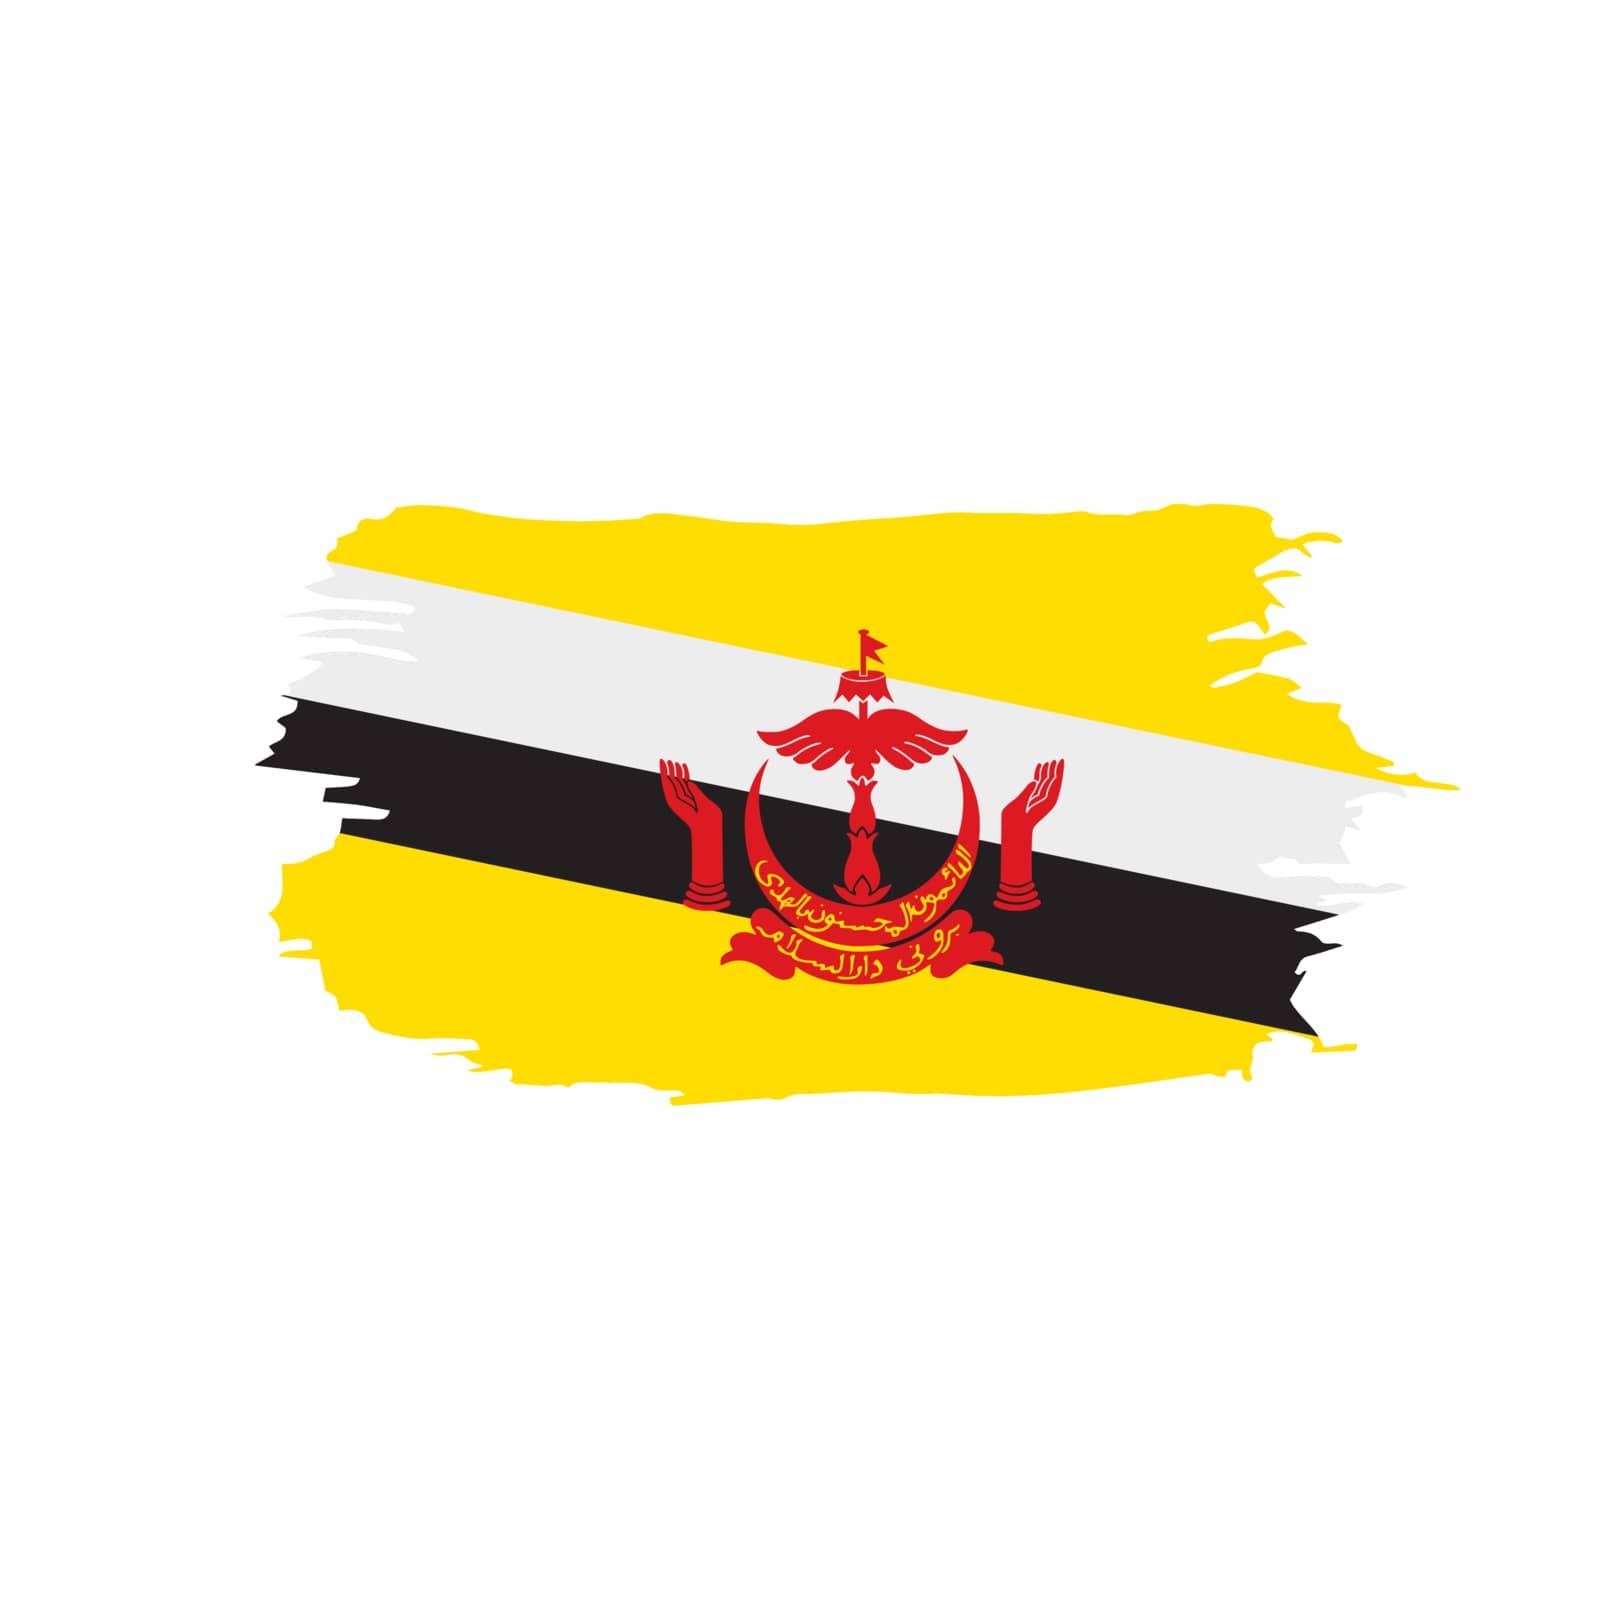 Brunei flag, vector illustration on a white background